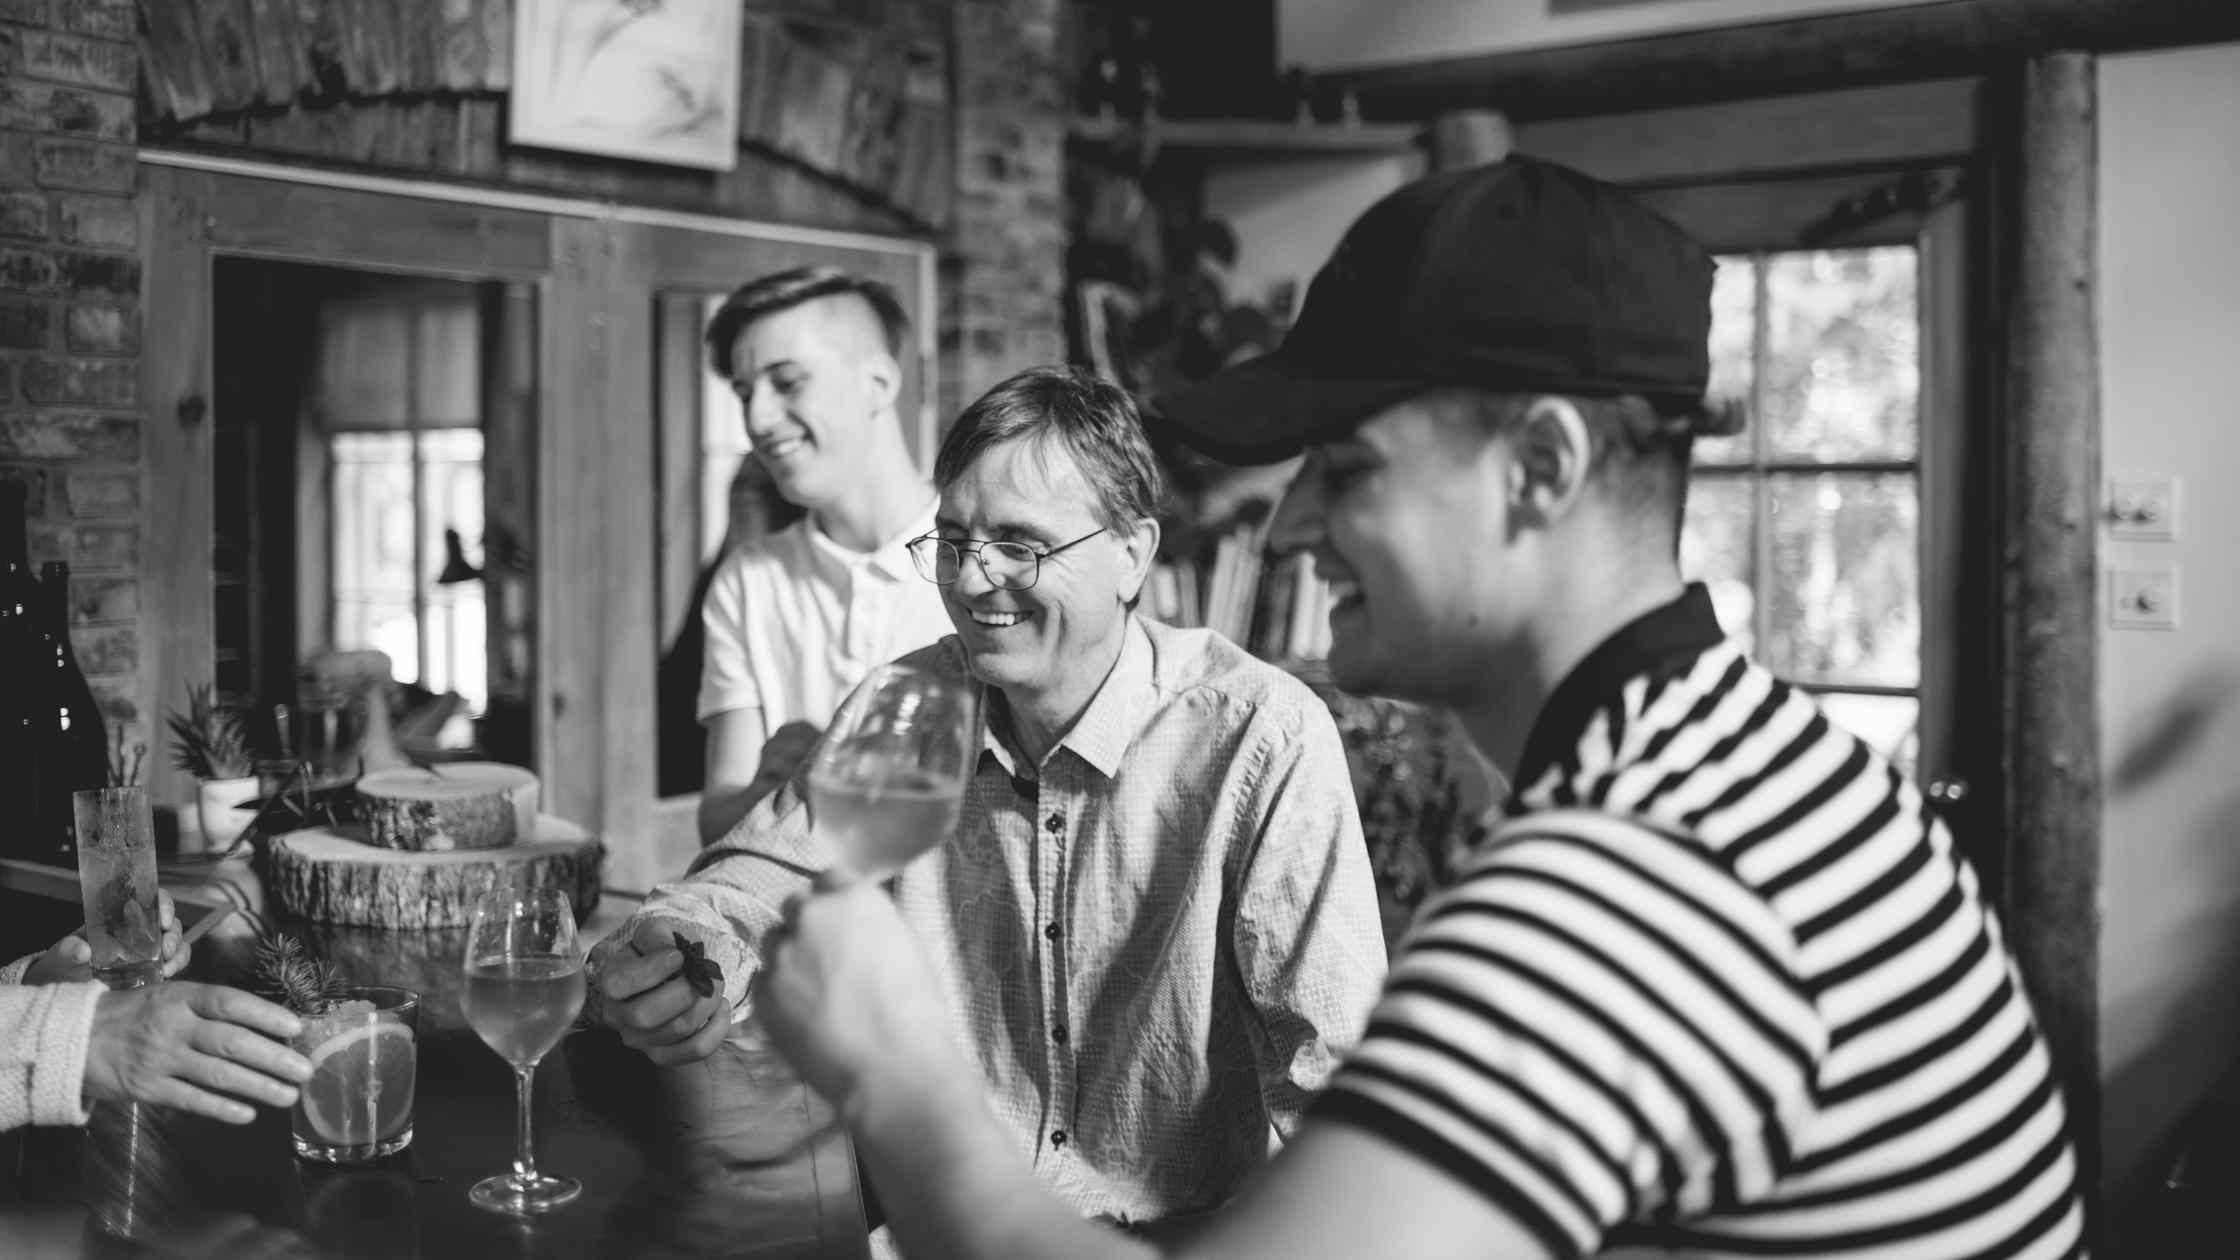 Vallier magnifie le moment avec sa famille en dégustant un verre de Charles-Aimé Robert, un vin doux de sève d'érable, au Témiscouata. | Domaine Acer